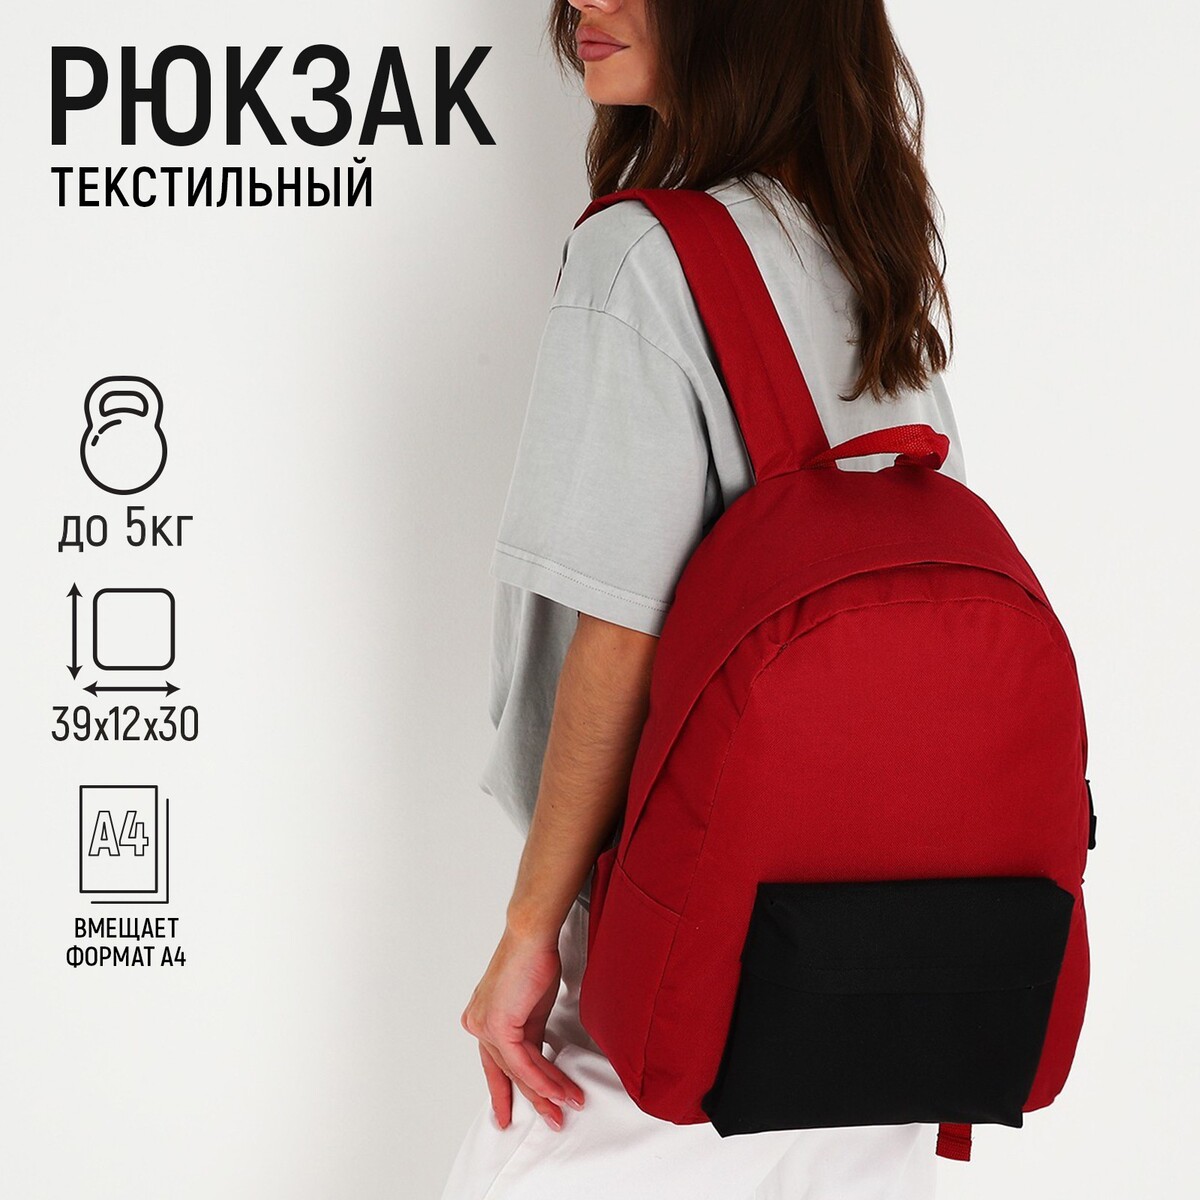 Рюкзак текстильный с цветным карманом, 30х39х12 см, бордовый/черный рюкзак текстильный с ным карманом 30х39х12 см бордовый